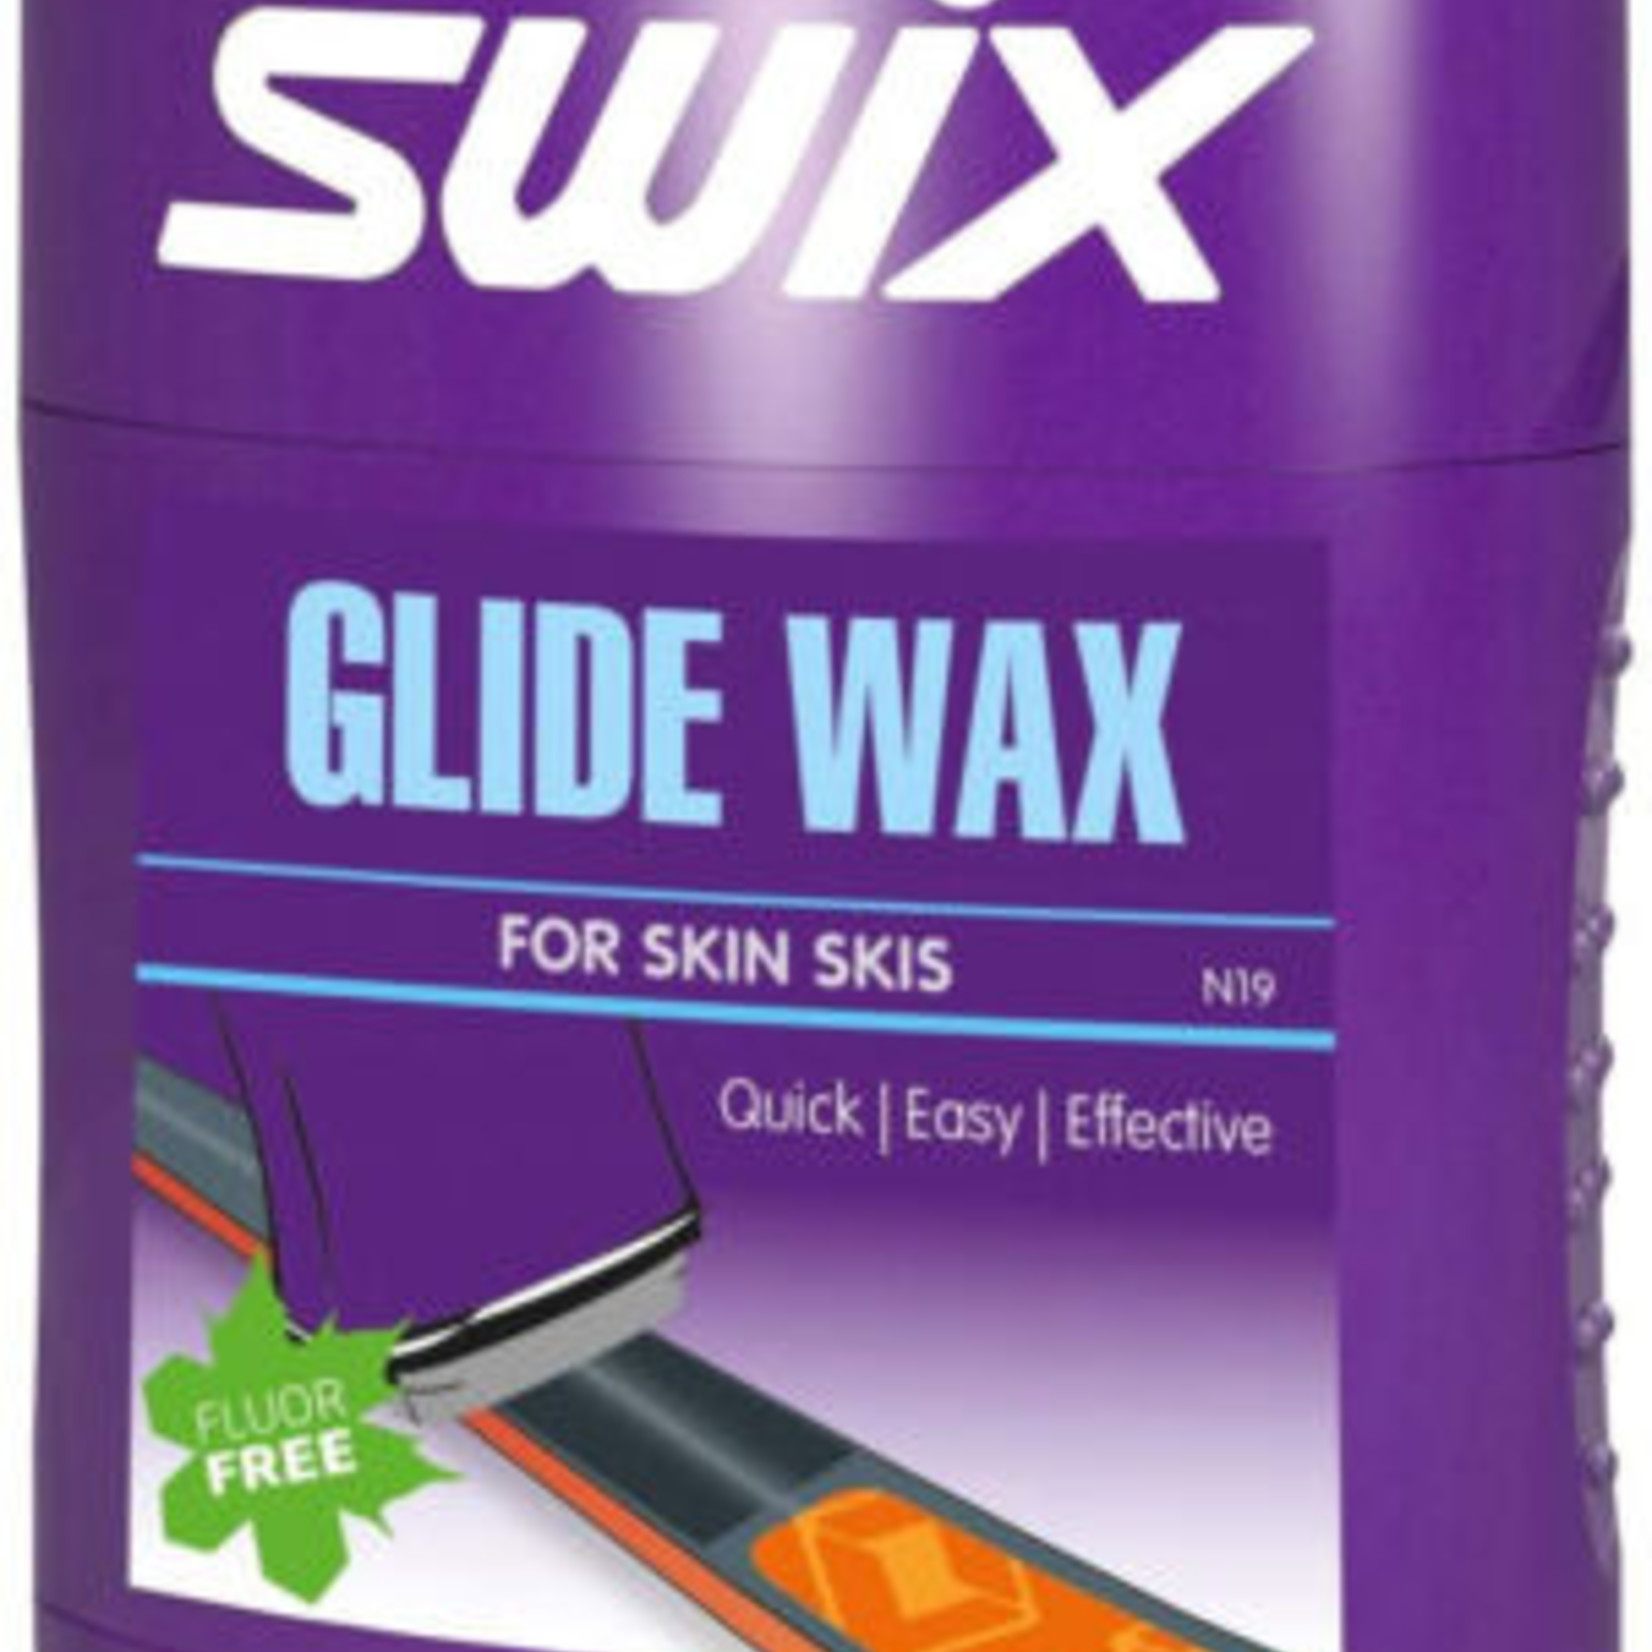 SWIX N19 Glide Wax For Skin Skis, USA